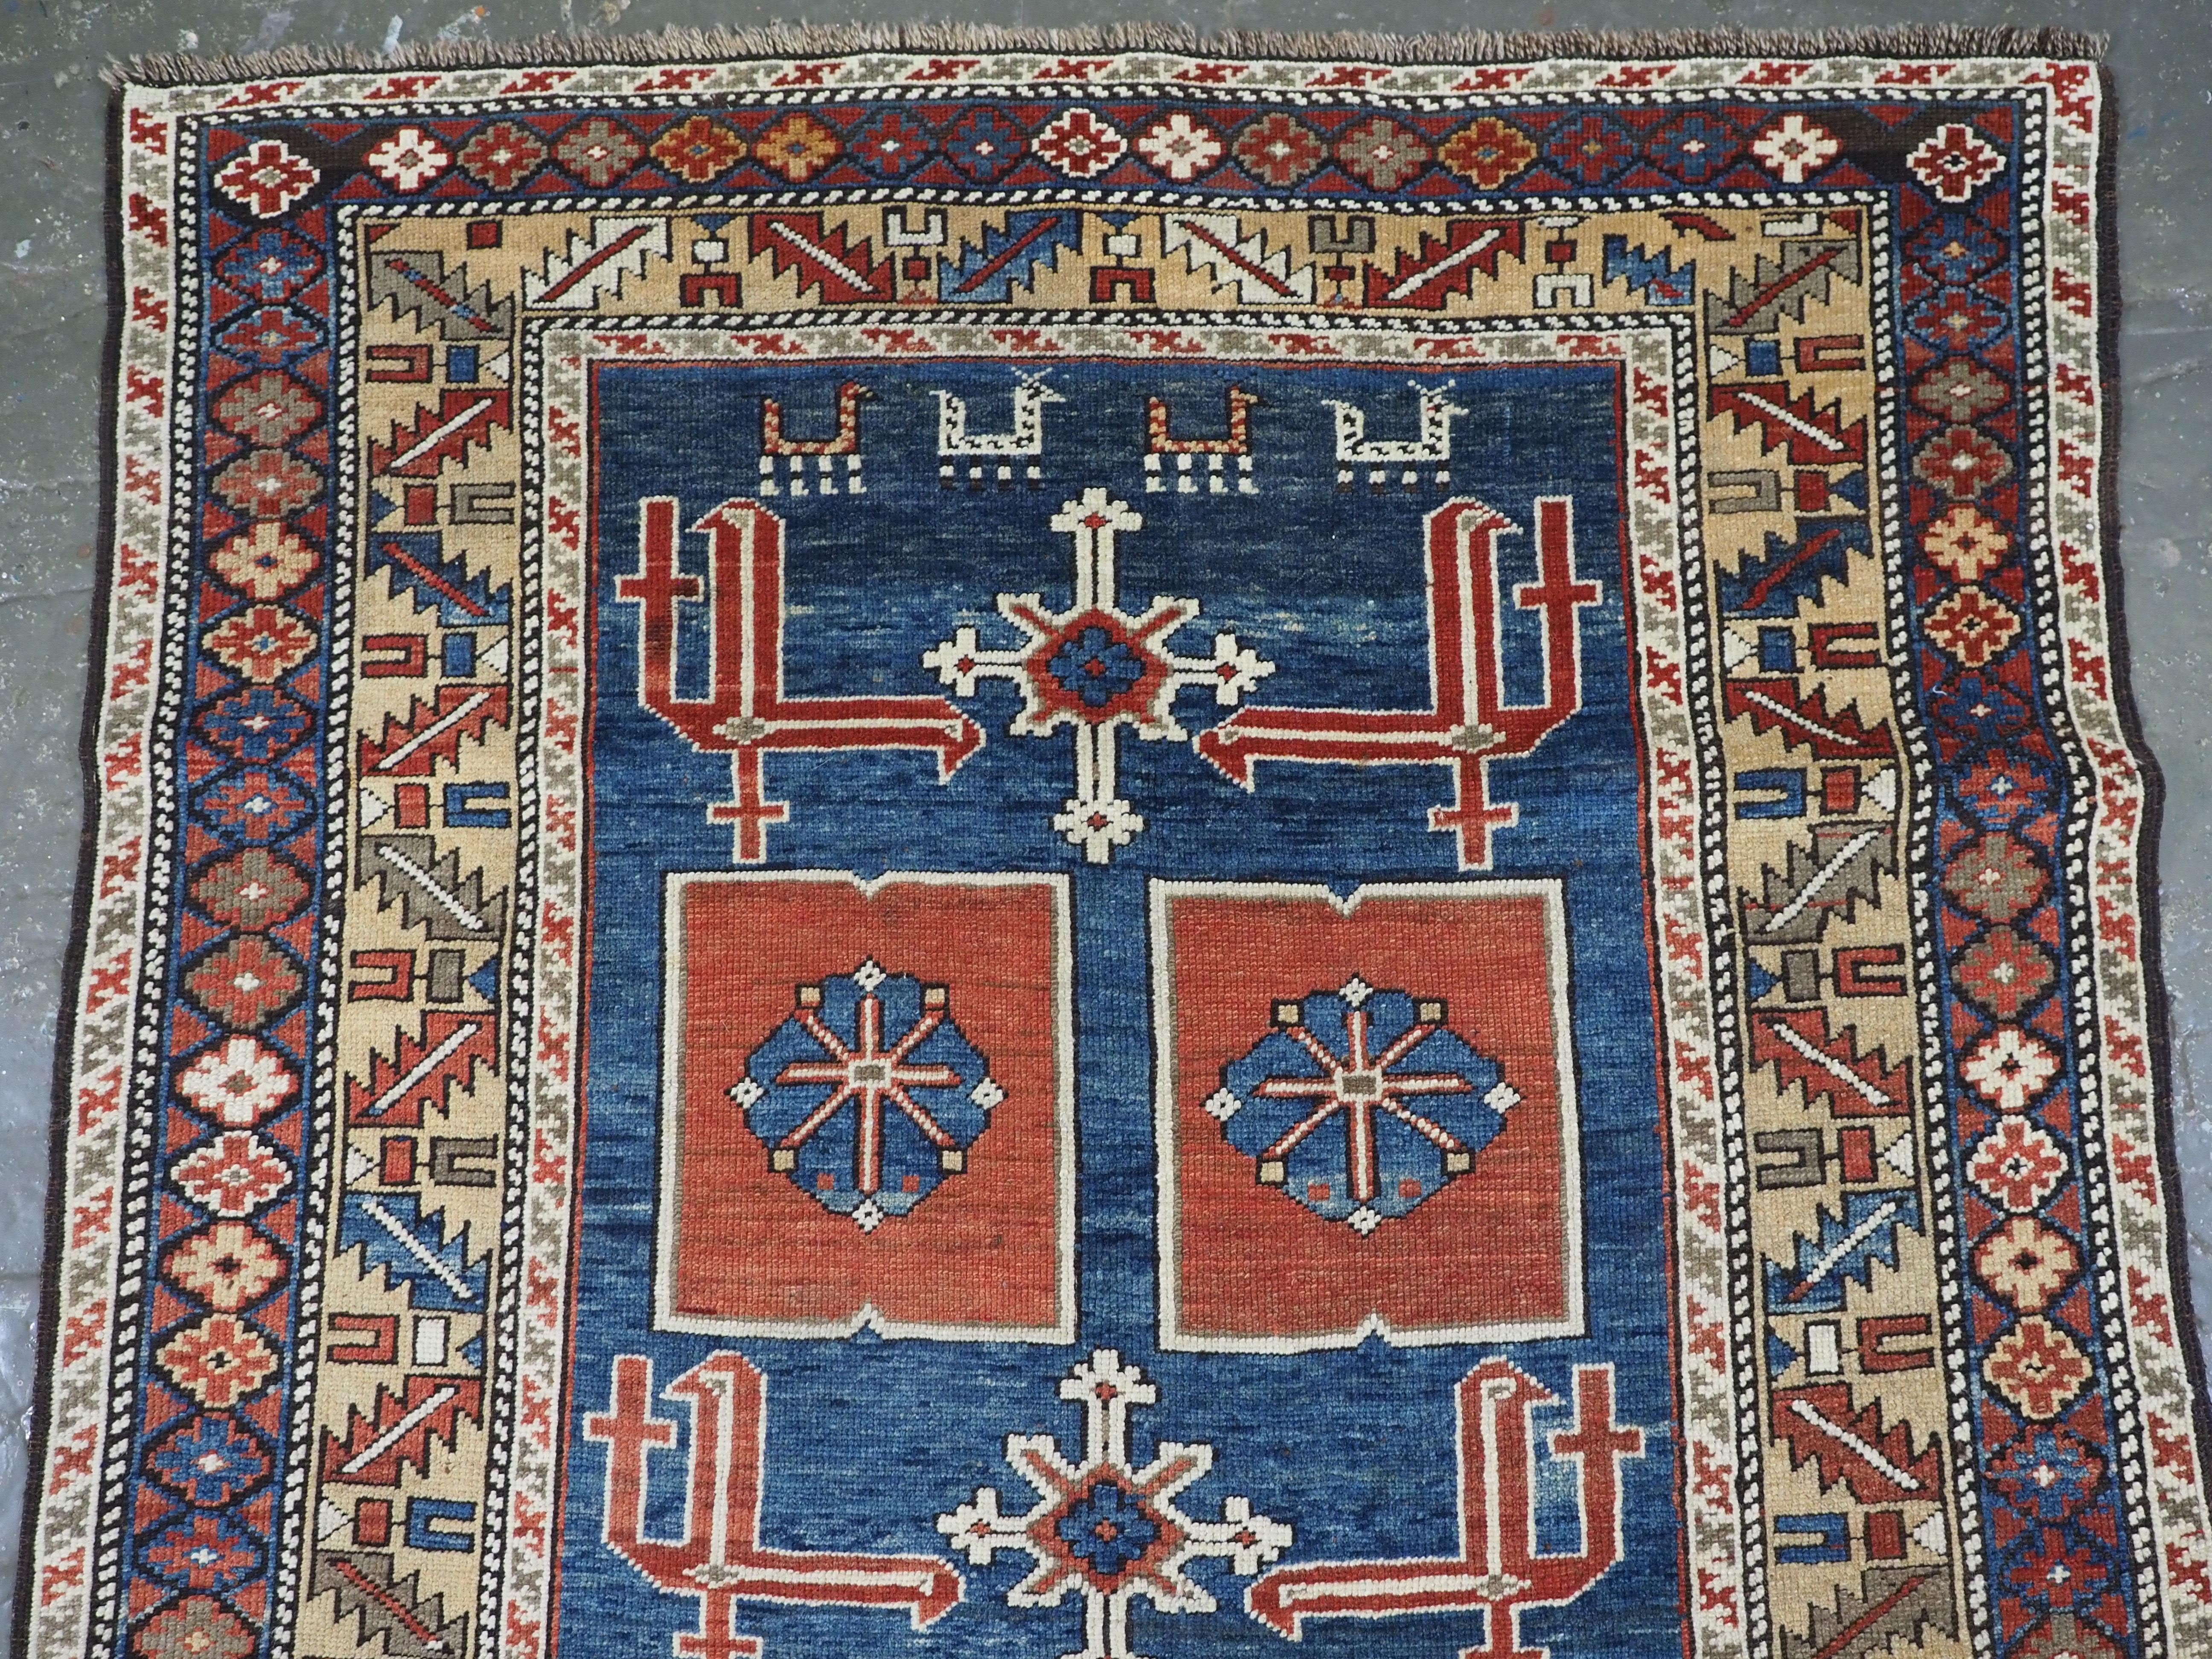 Größe: 180 x 110 cm (5ft 11in x 3ft 7in).

Antiker kaukasischer Kuba-Teppich aus dem Dorf Karagashli, das nördlich von Perepedil liegt.

Um 1880.

Der Teppich ist ein sehr gut gezeichnetes Beispiel für dieses klassische kaukasische Design. Das